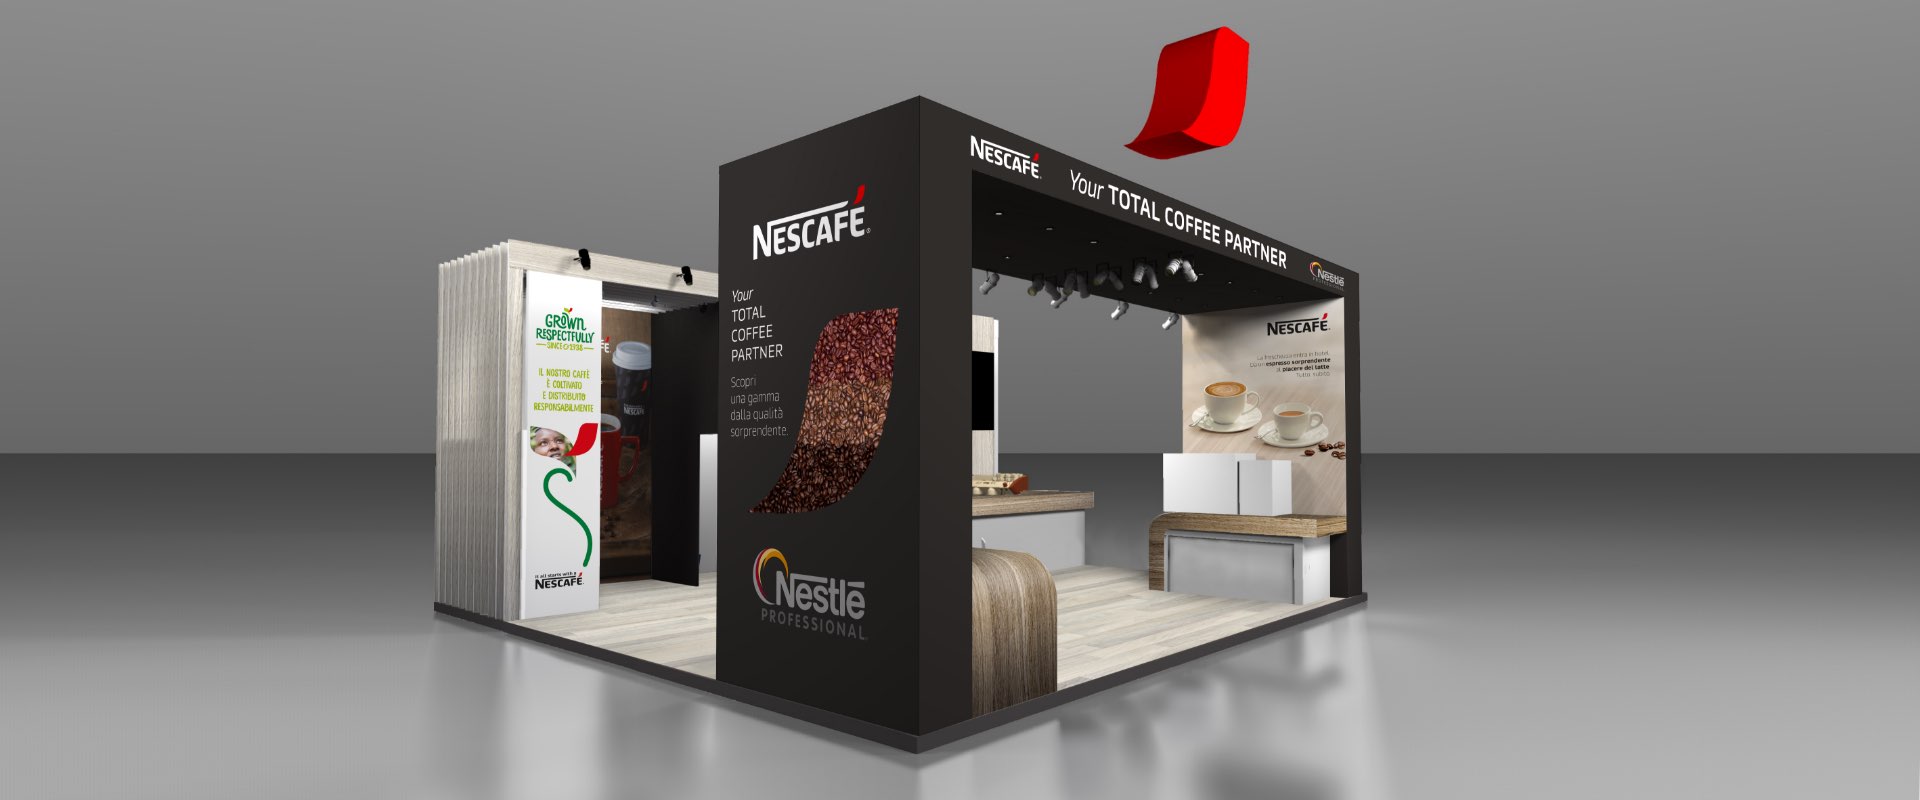 design stand SIGEP Nestlé professional Nescafé